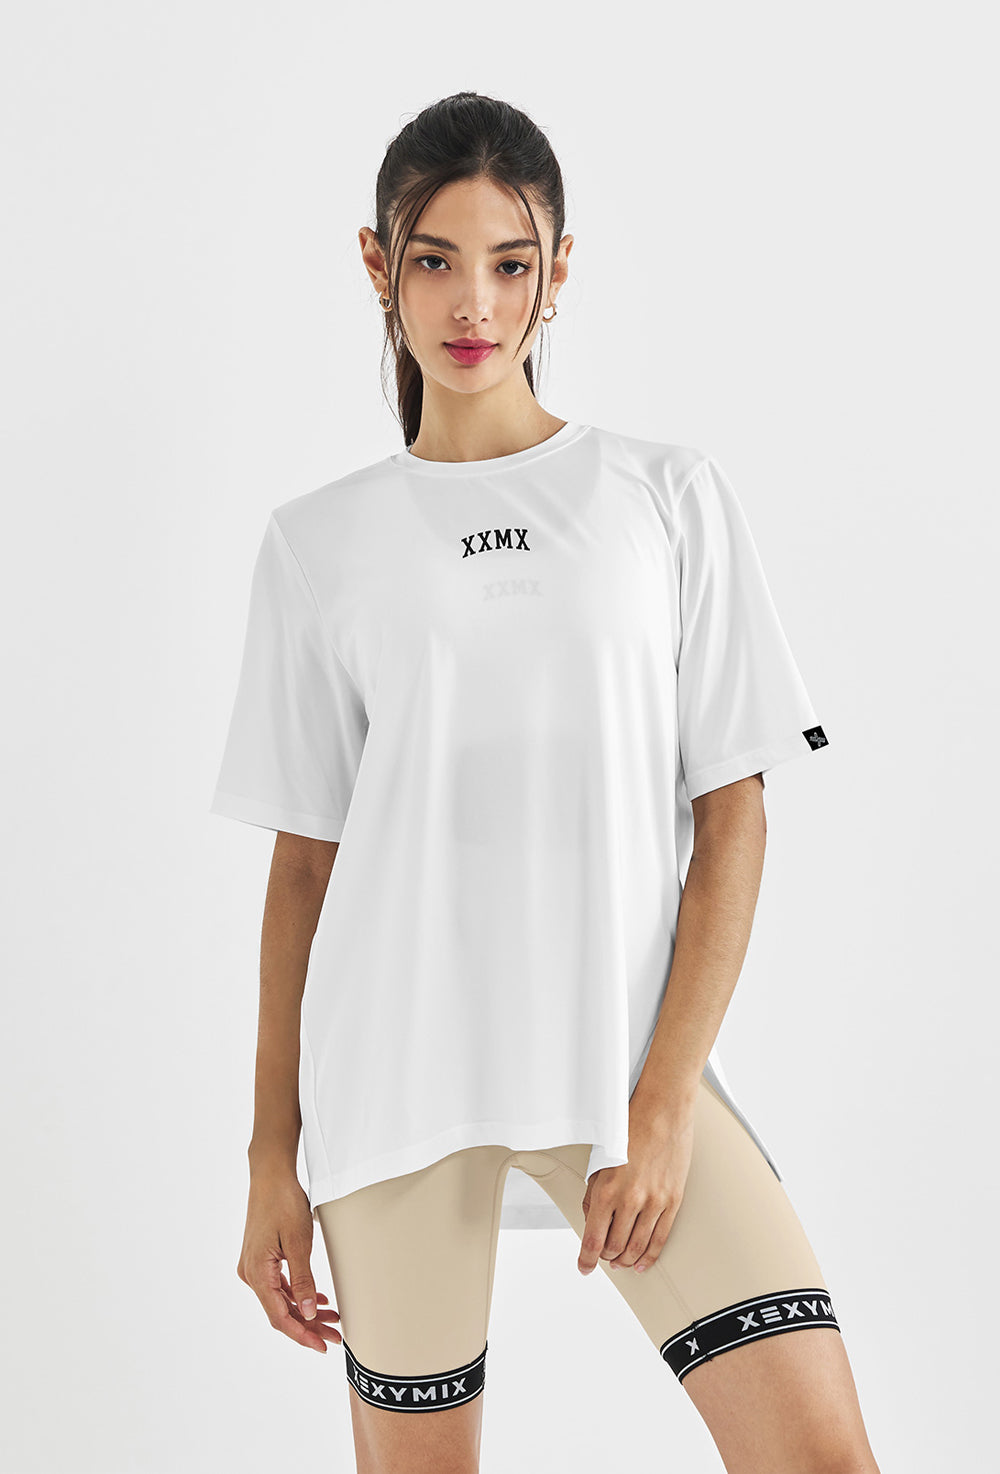 1000px x 1474px - XXMX Coverup T-Shirt - Ivory â€“ XEXYMIX Australia